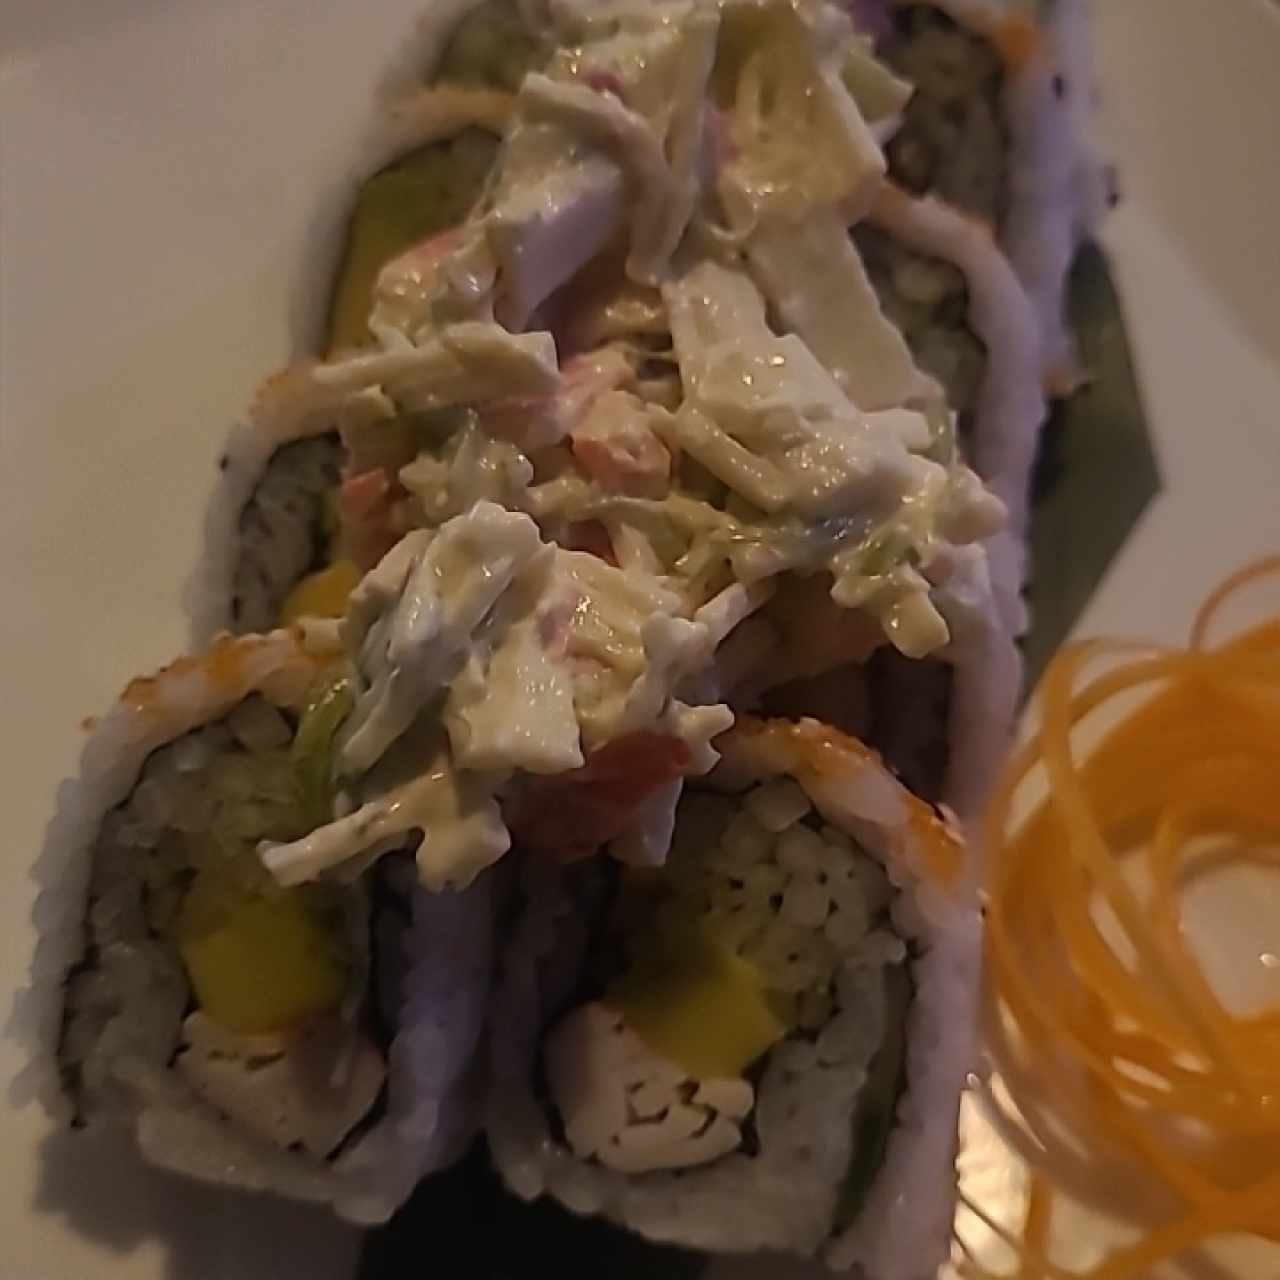 Sushi Rolls - Dinamita